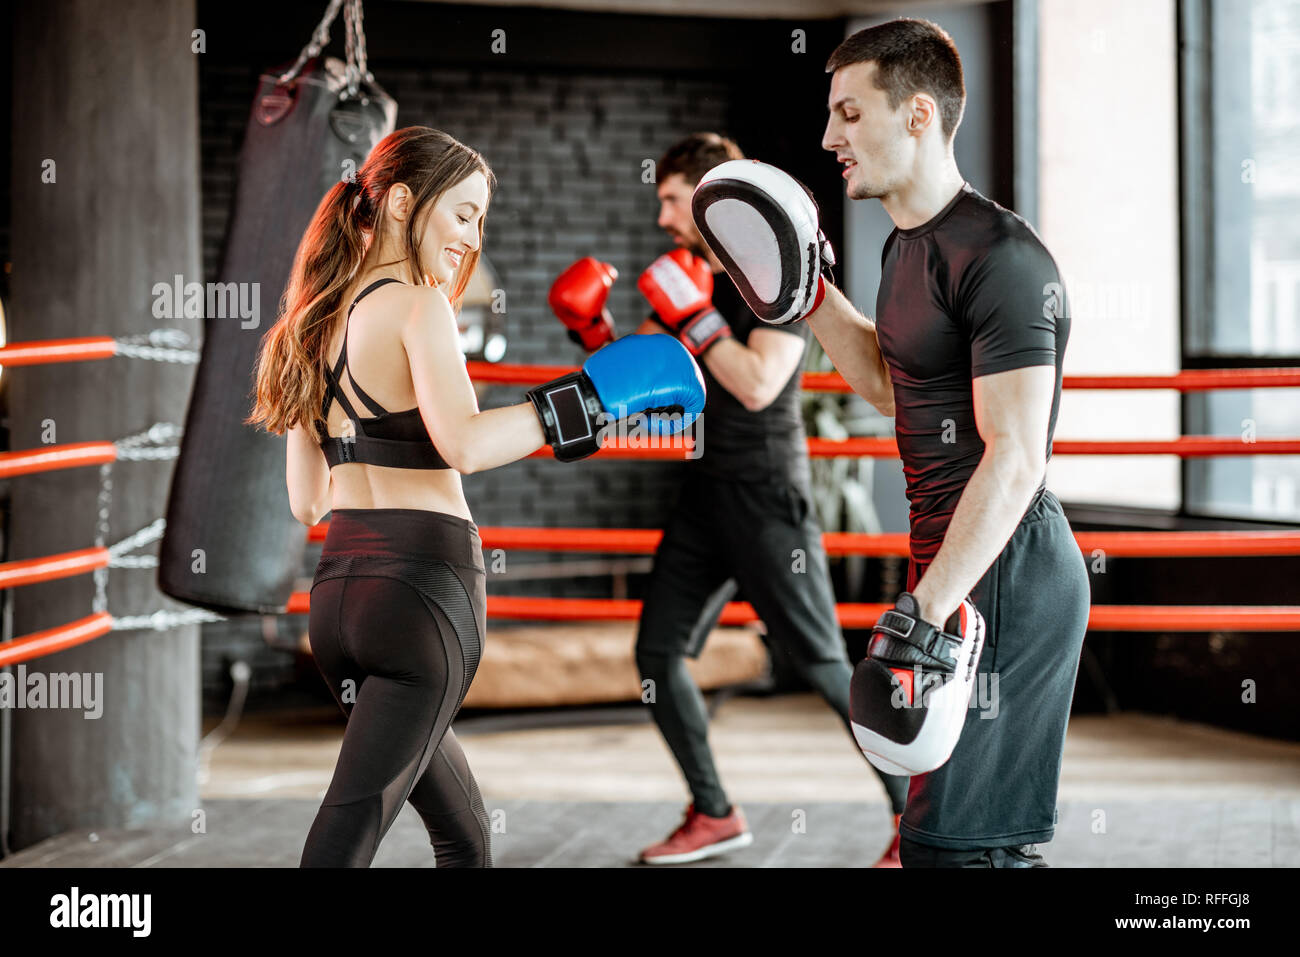 Joven Atractiva Mujer De Fitness Europea Con Guantes De Boxeo Posando En  Estudio Imagen de archivo - Imagen de deportivo, deporte: 233542393